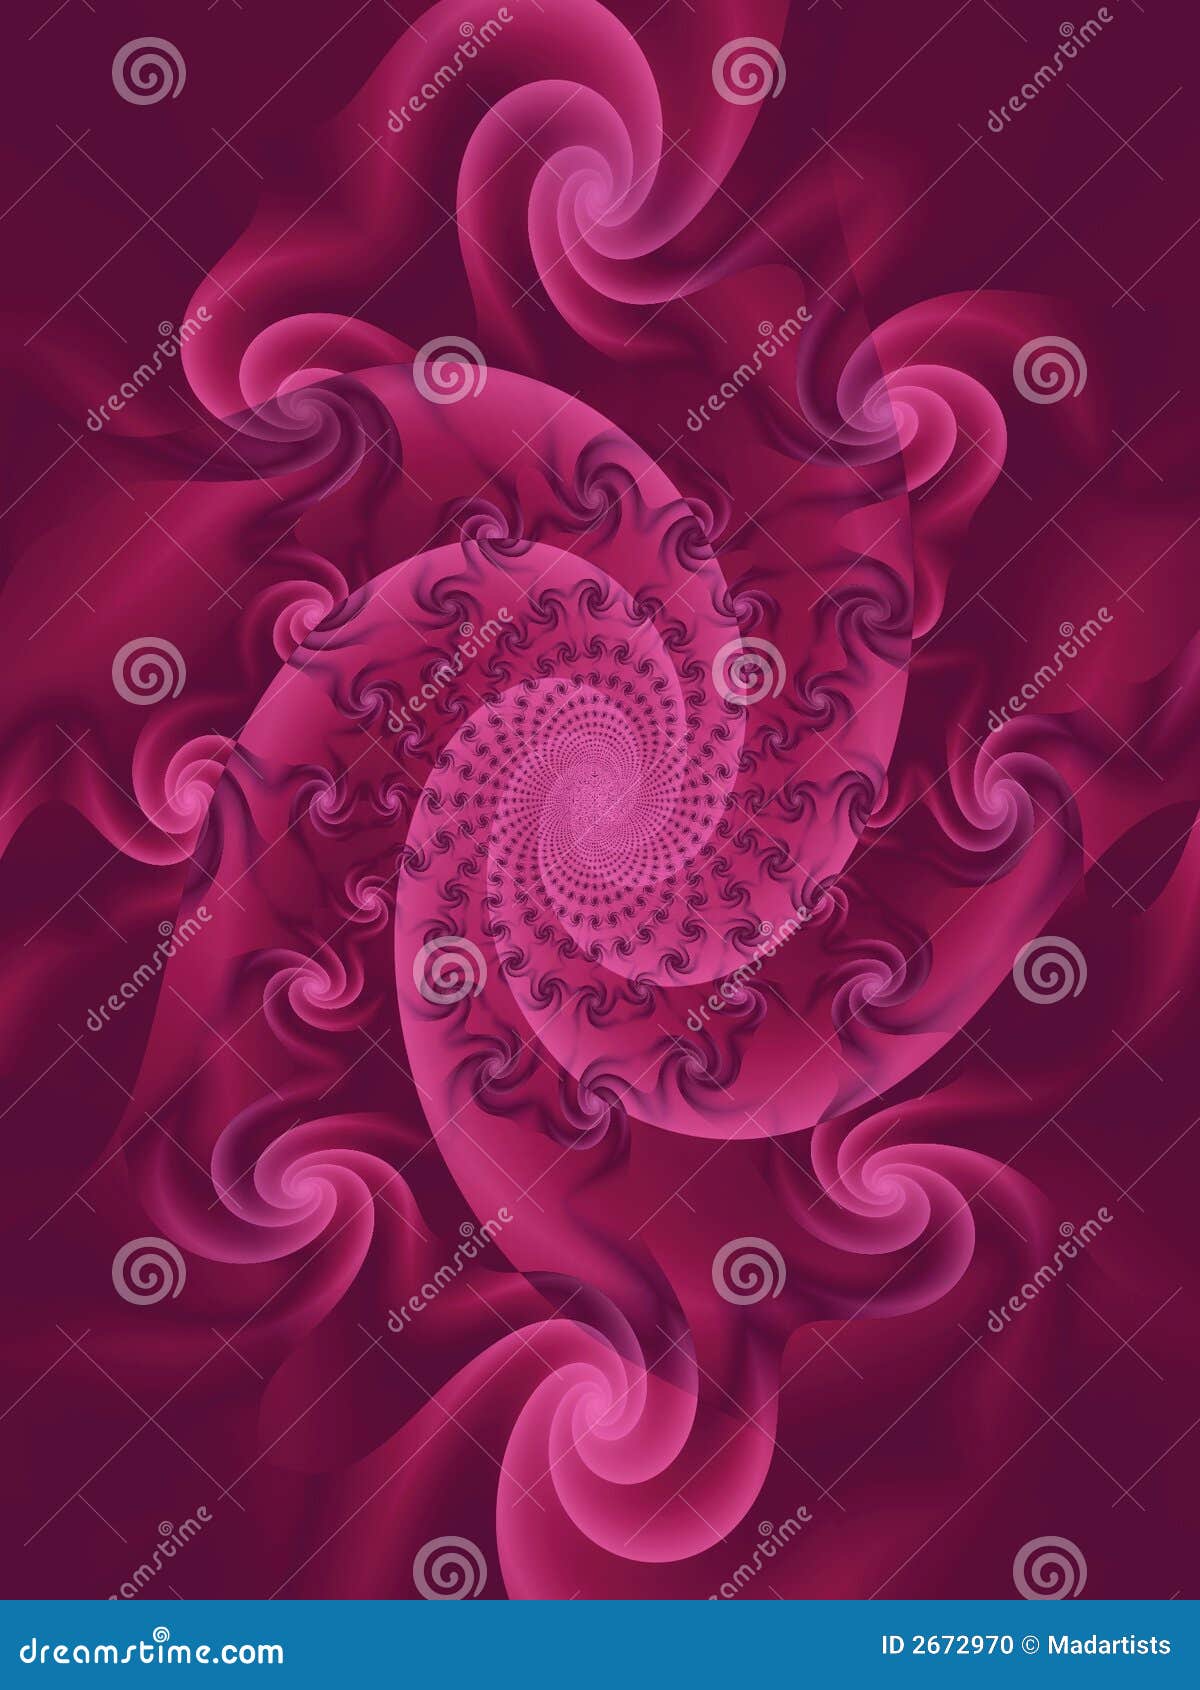 swirls spirals whirlpool pink